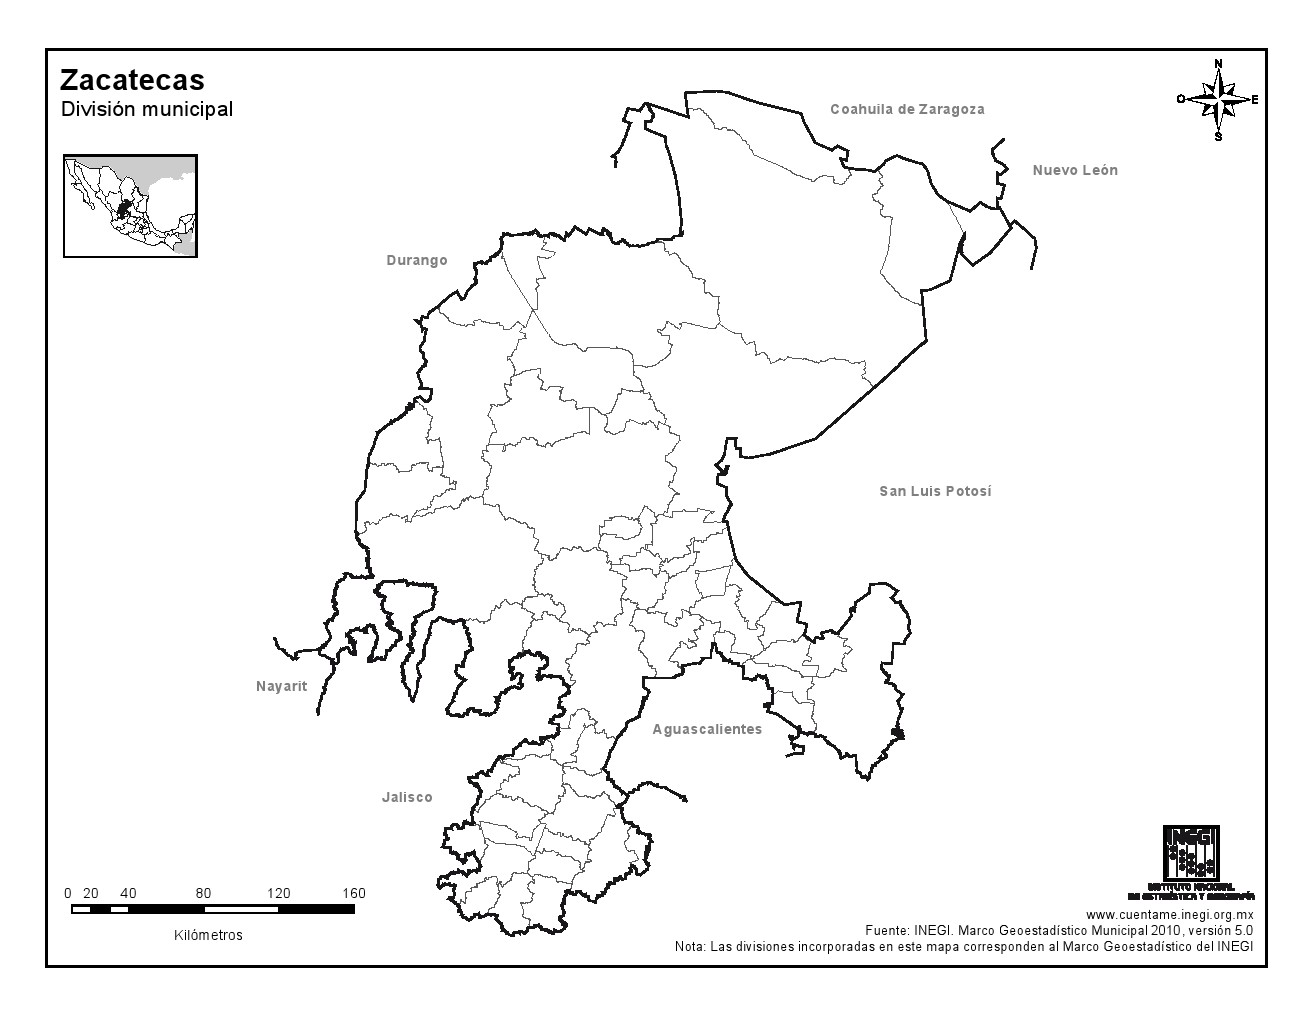 Mapa mudo de municipios de Zacatecas. INEGI de México